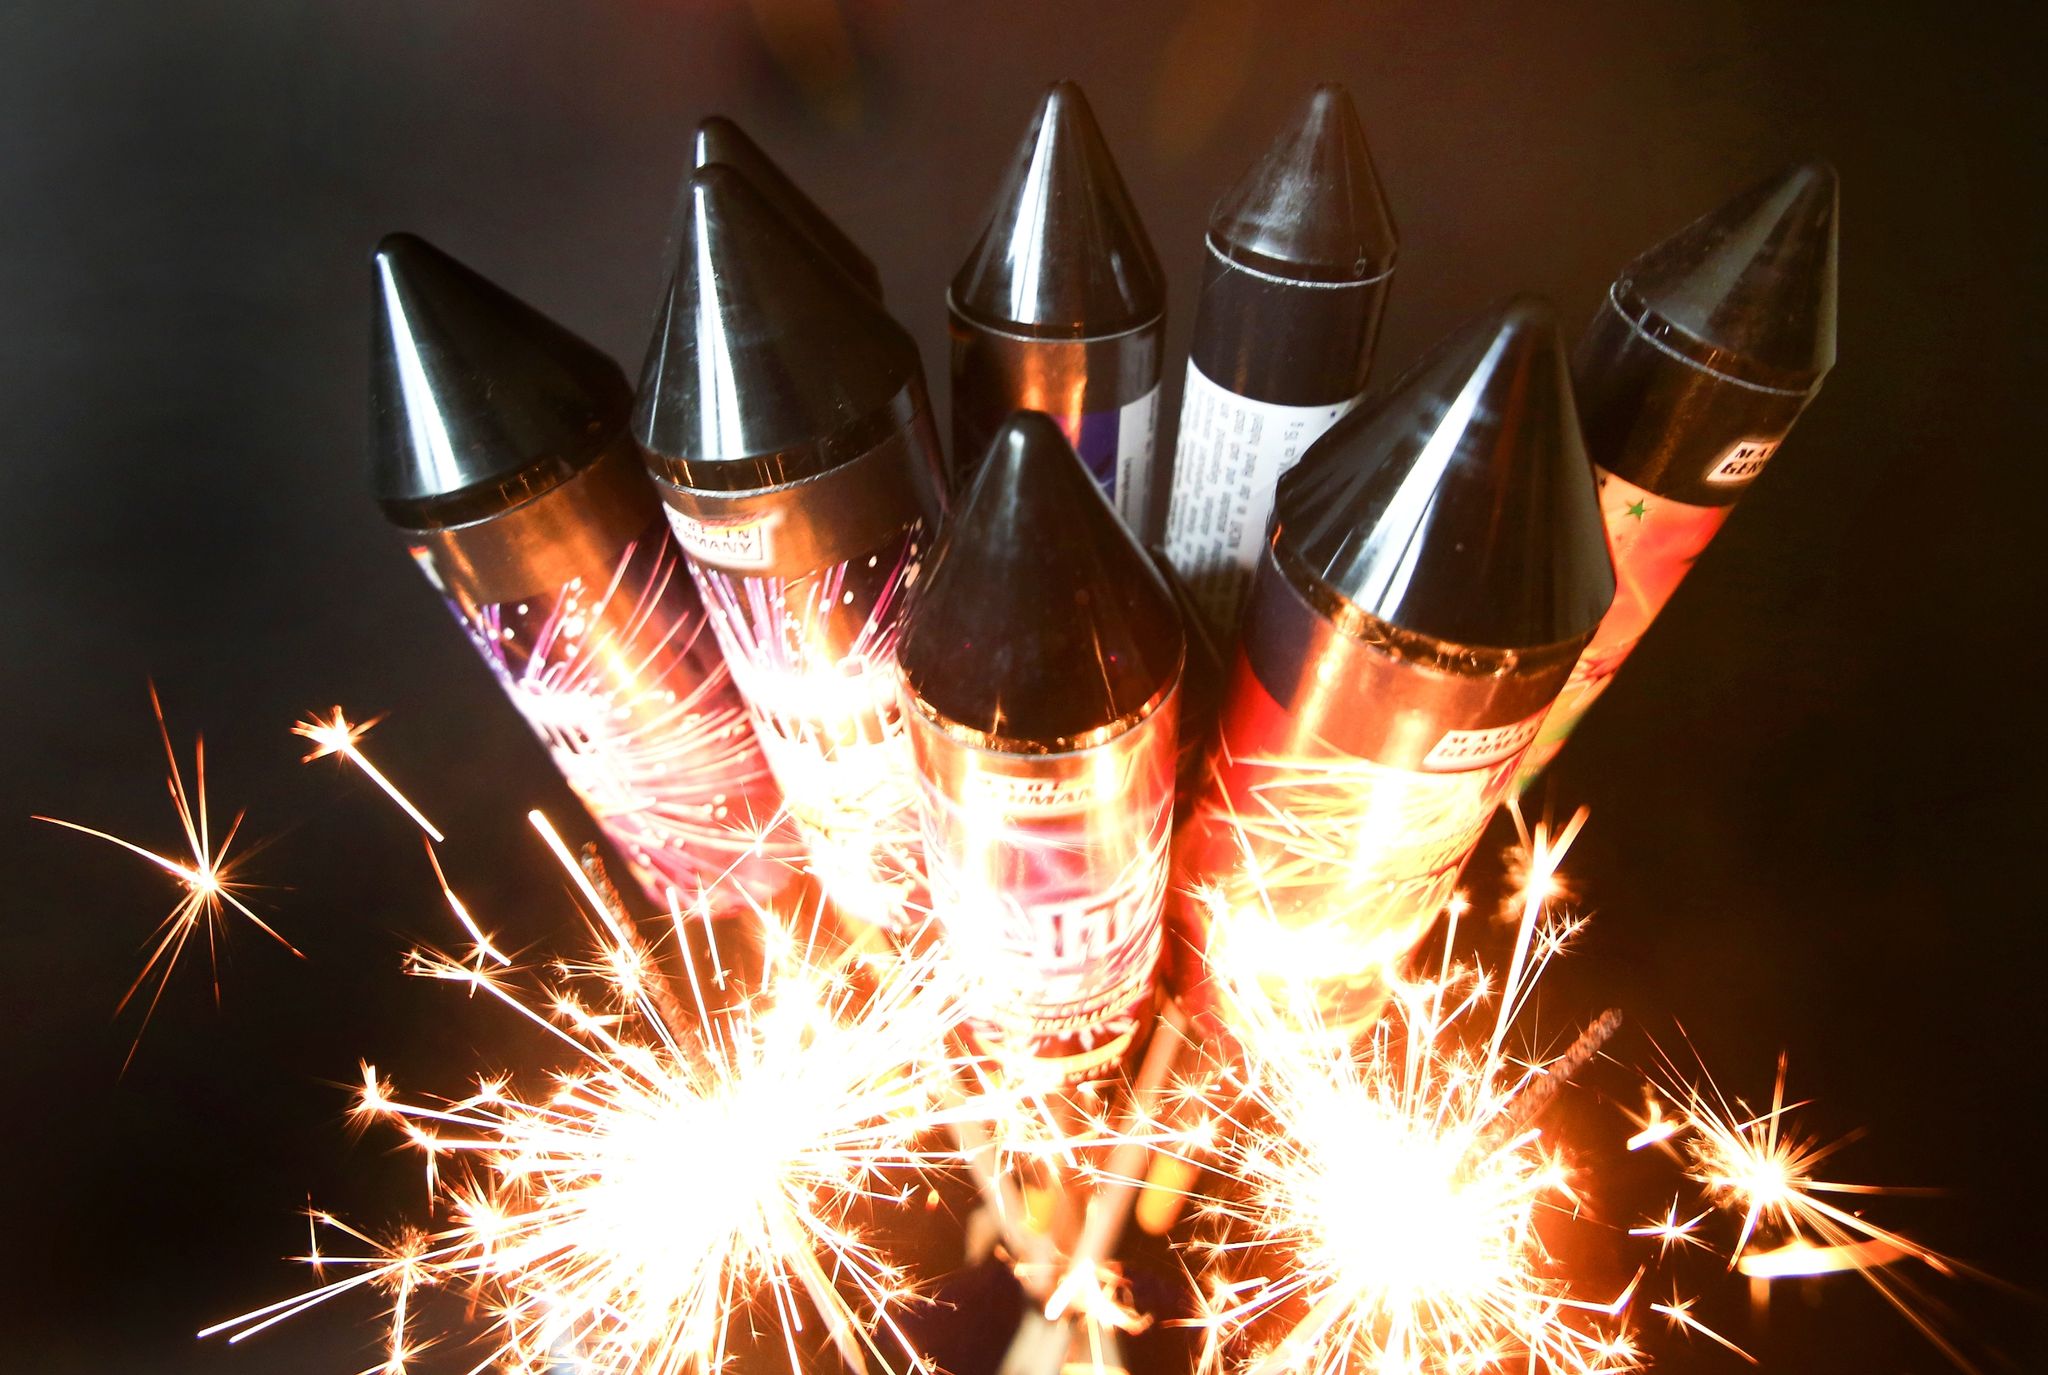 Das zischt und sprüht Funken: Feuerwerk macht Freude, birgt aber auch Risiken, gegen die man sich zum Teil wappnen kann.